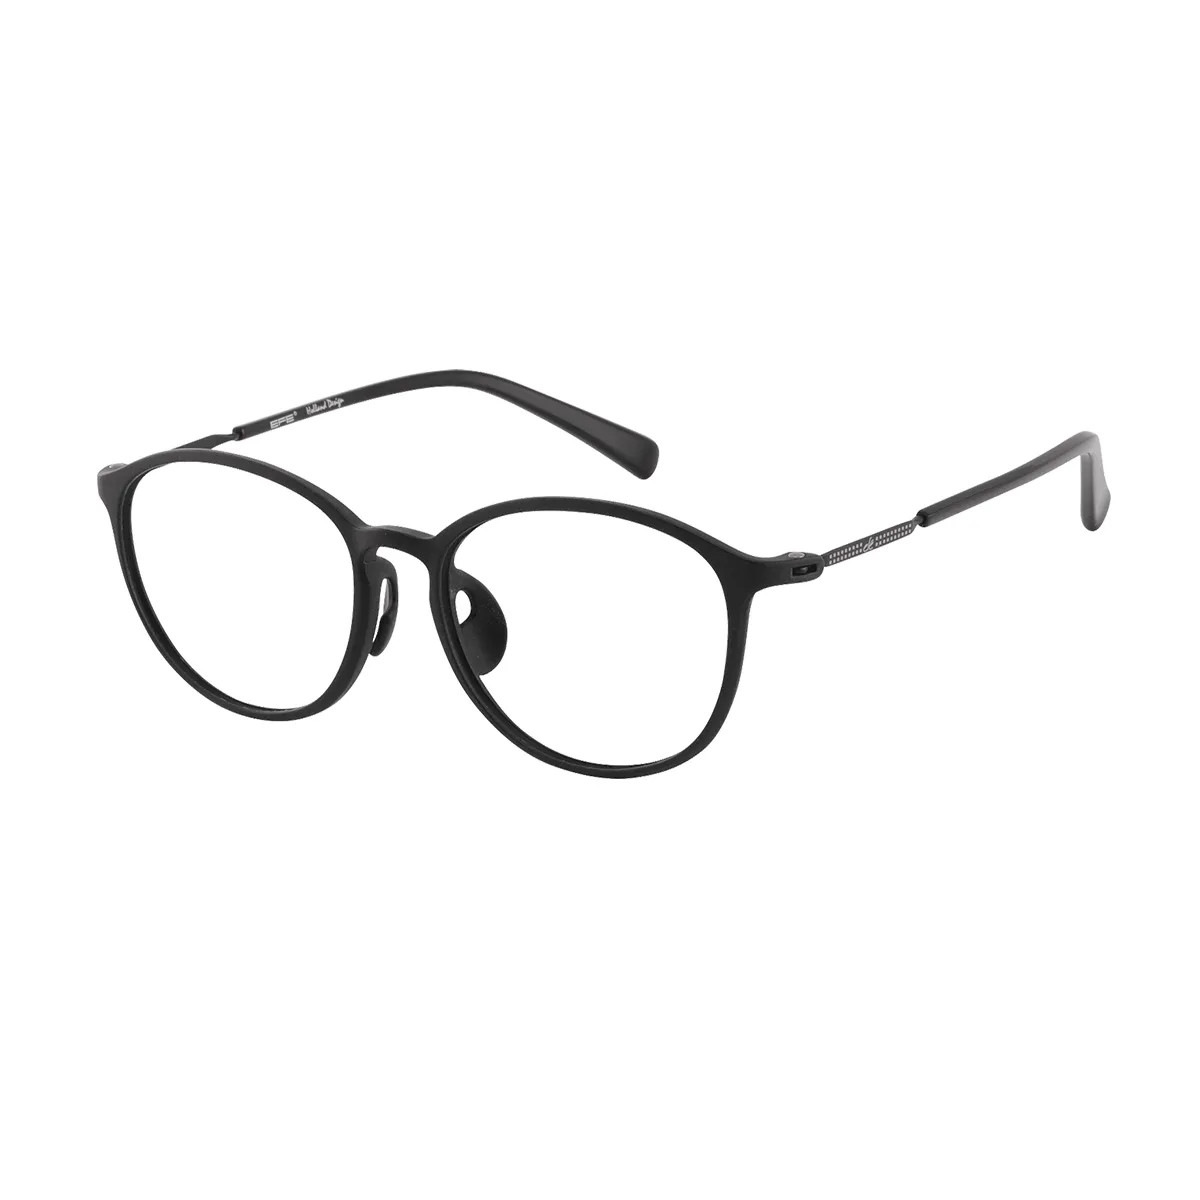 Katz - Oval Black Glasses for Men & Women